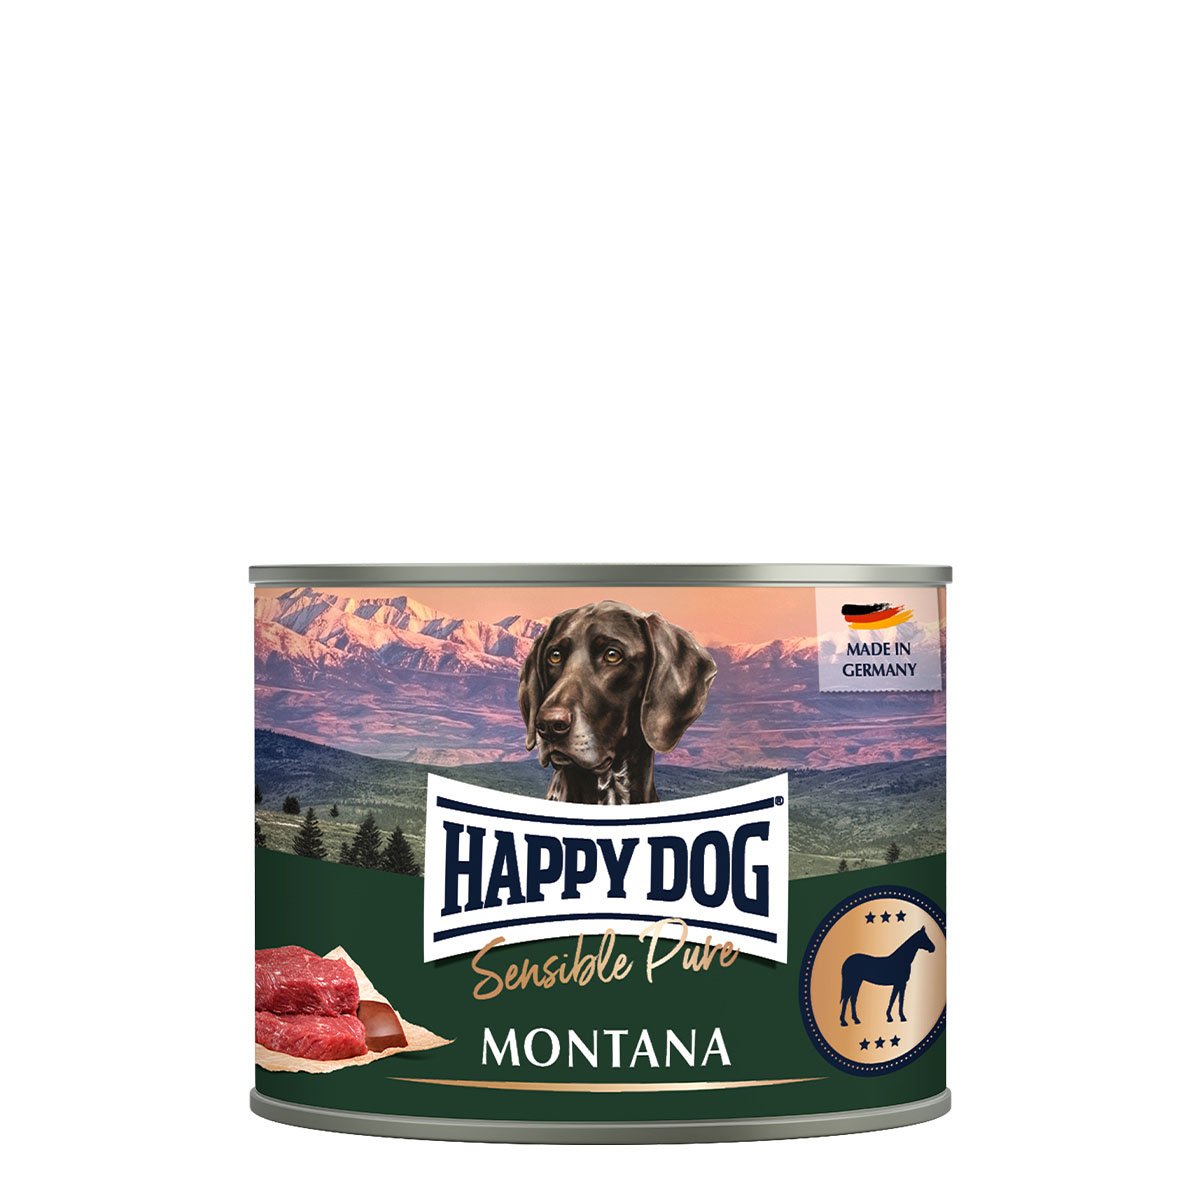 Happy Dog Sensible Pure Montana (Pferd) 12x200g